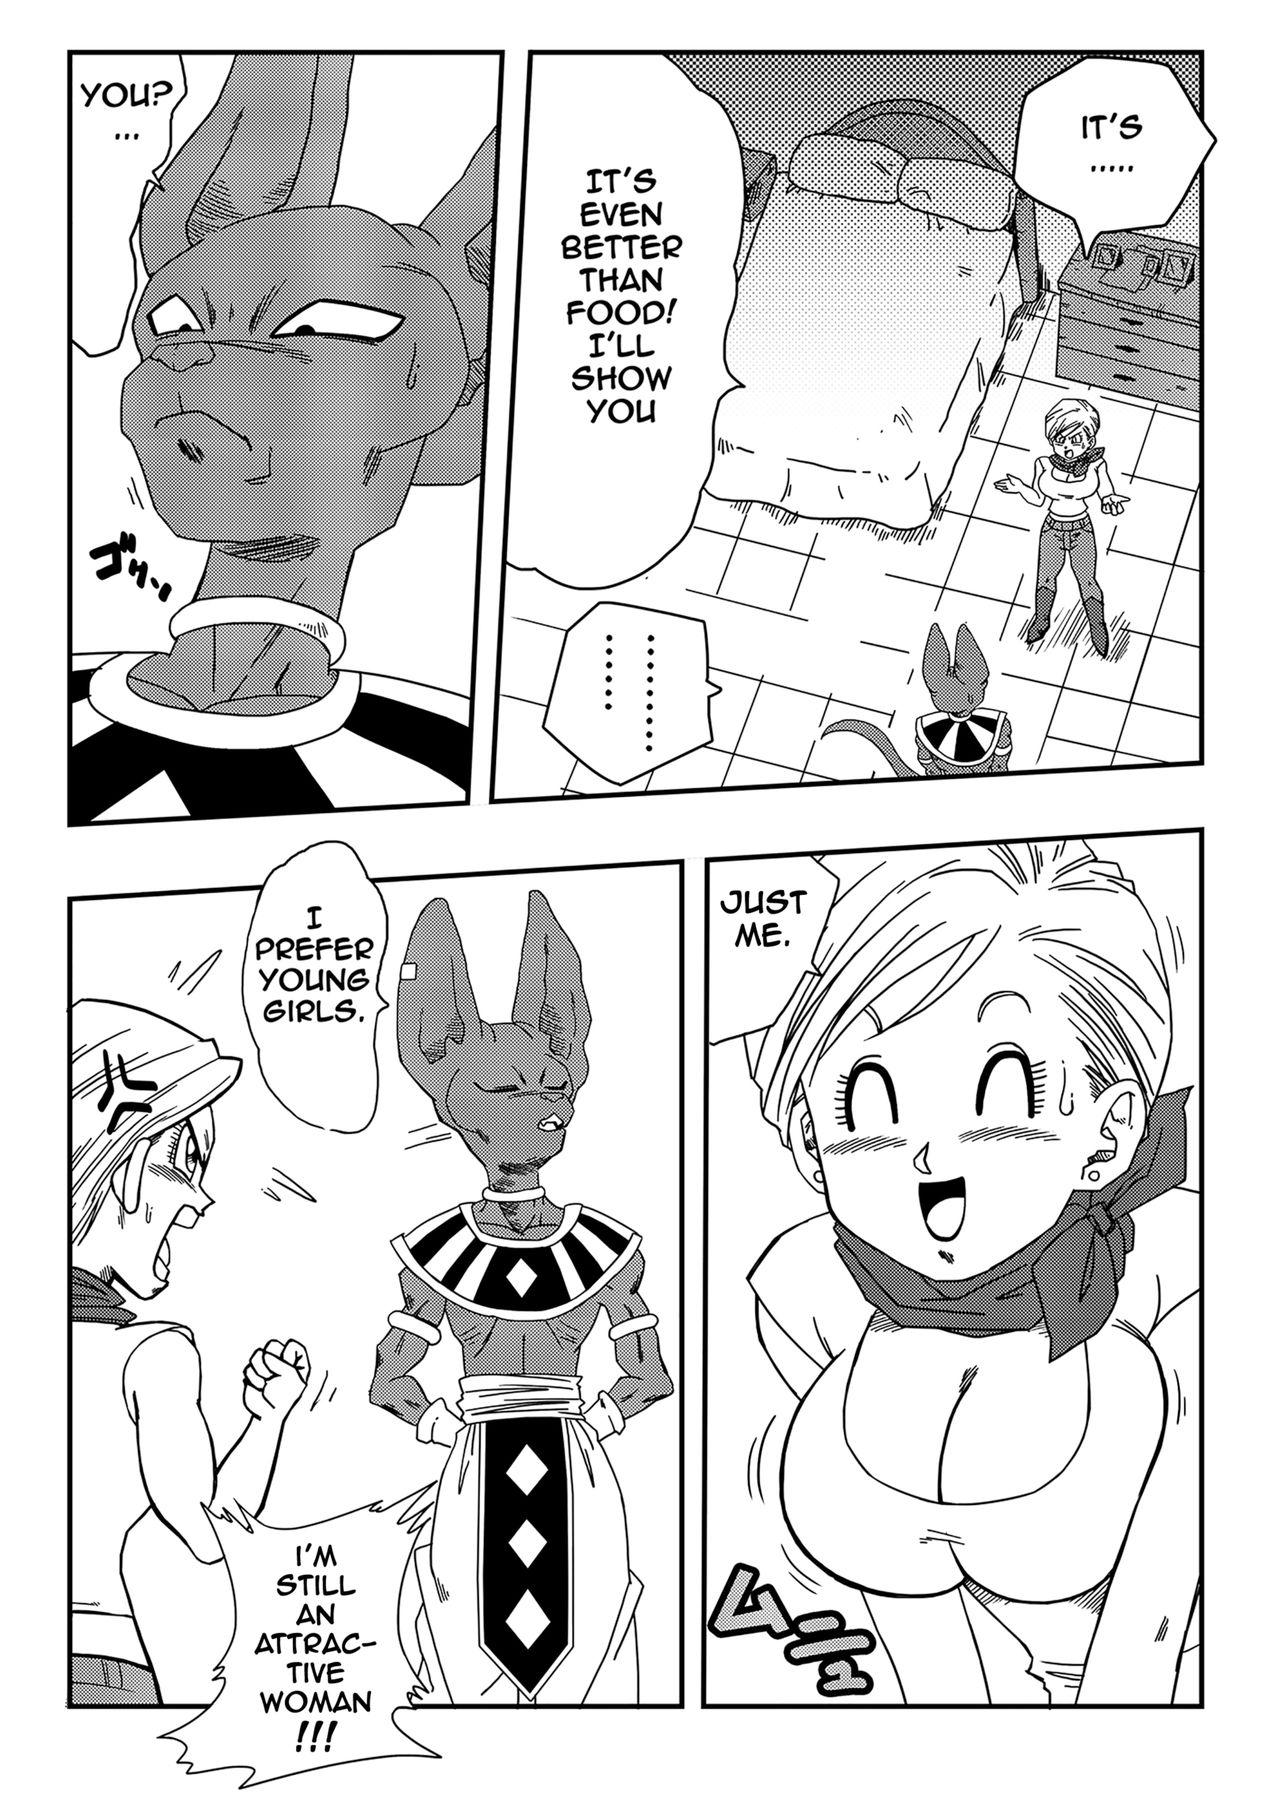 Blowjob Bulma Saves The Earth! - Dragon ball Bro - Page 5